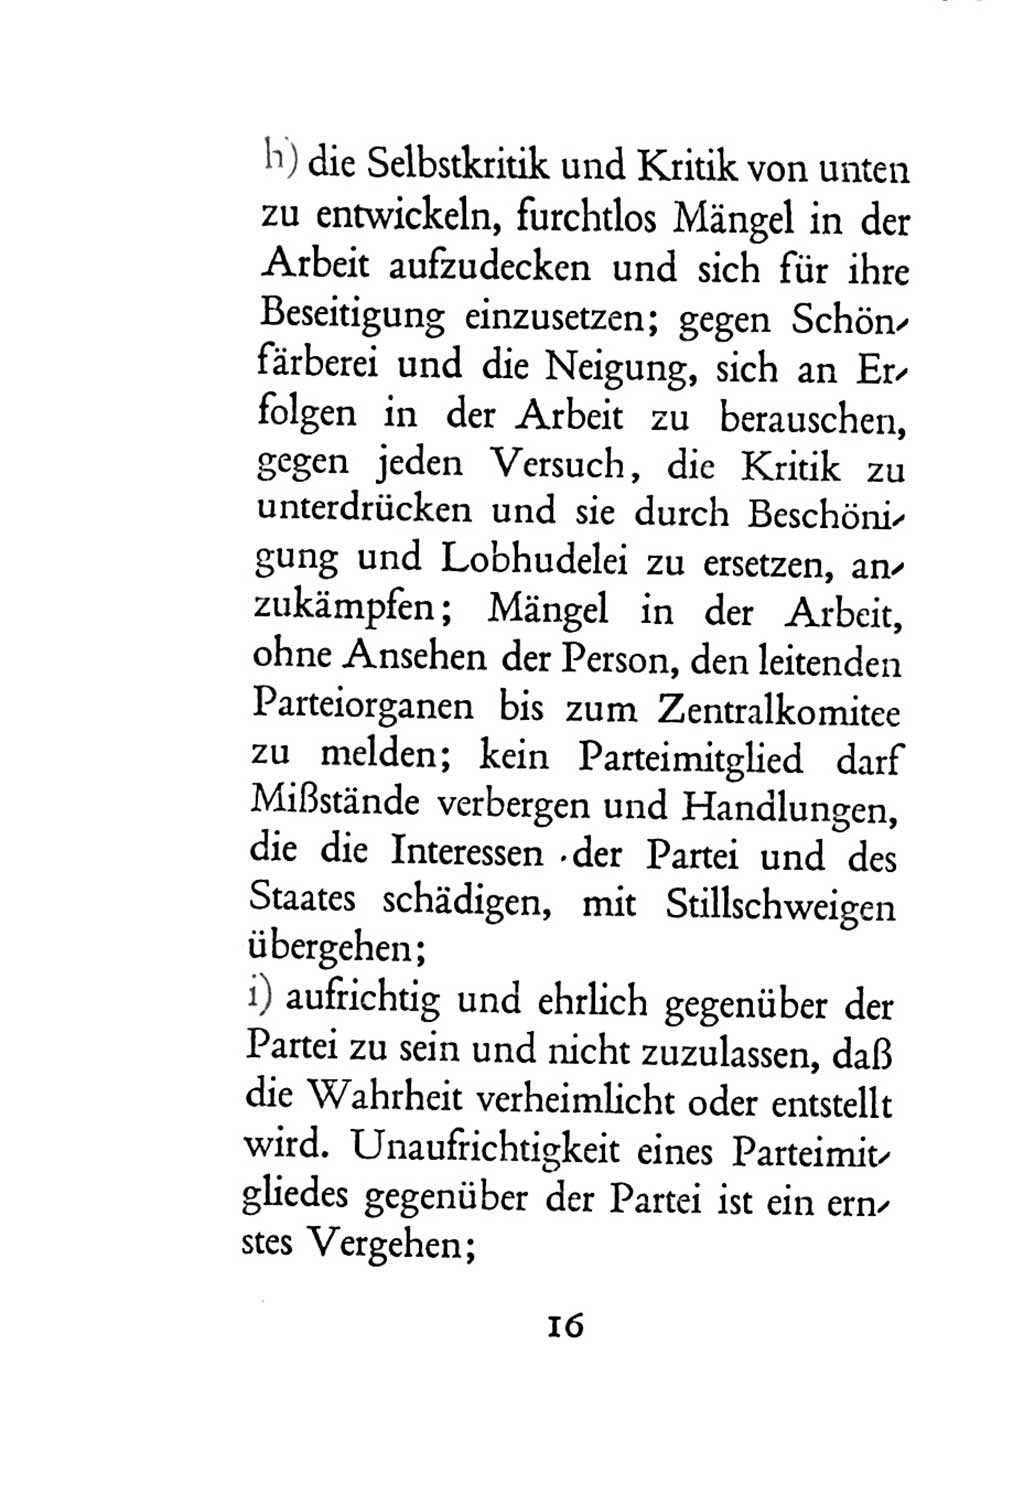 Statut der Sozialistischen Einheitspartei Deutschlands (SED) 1954, Seite 16